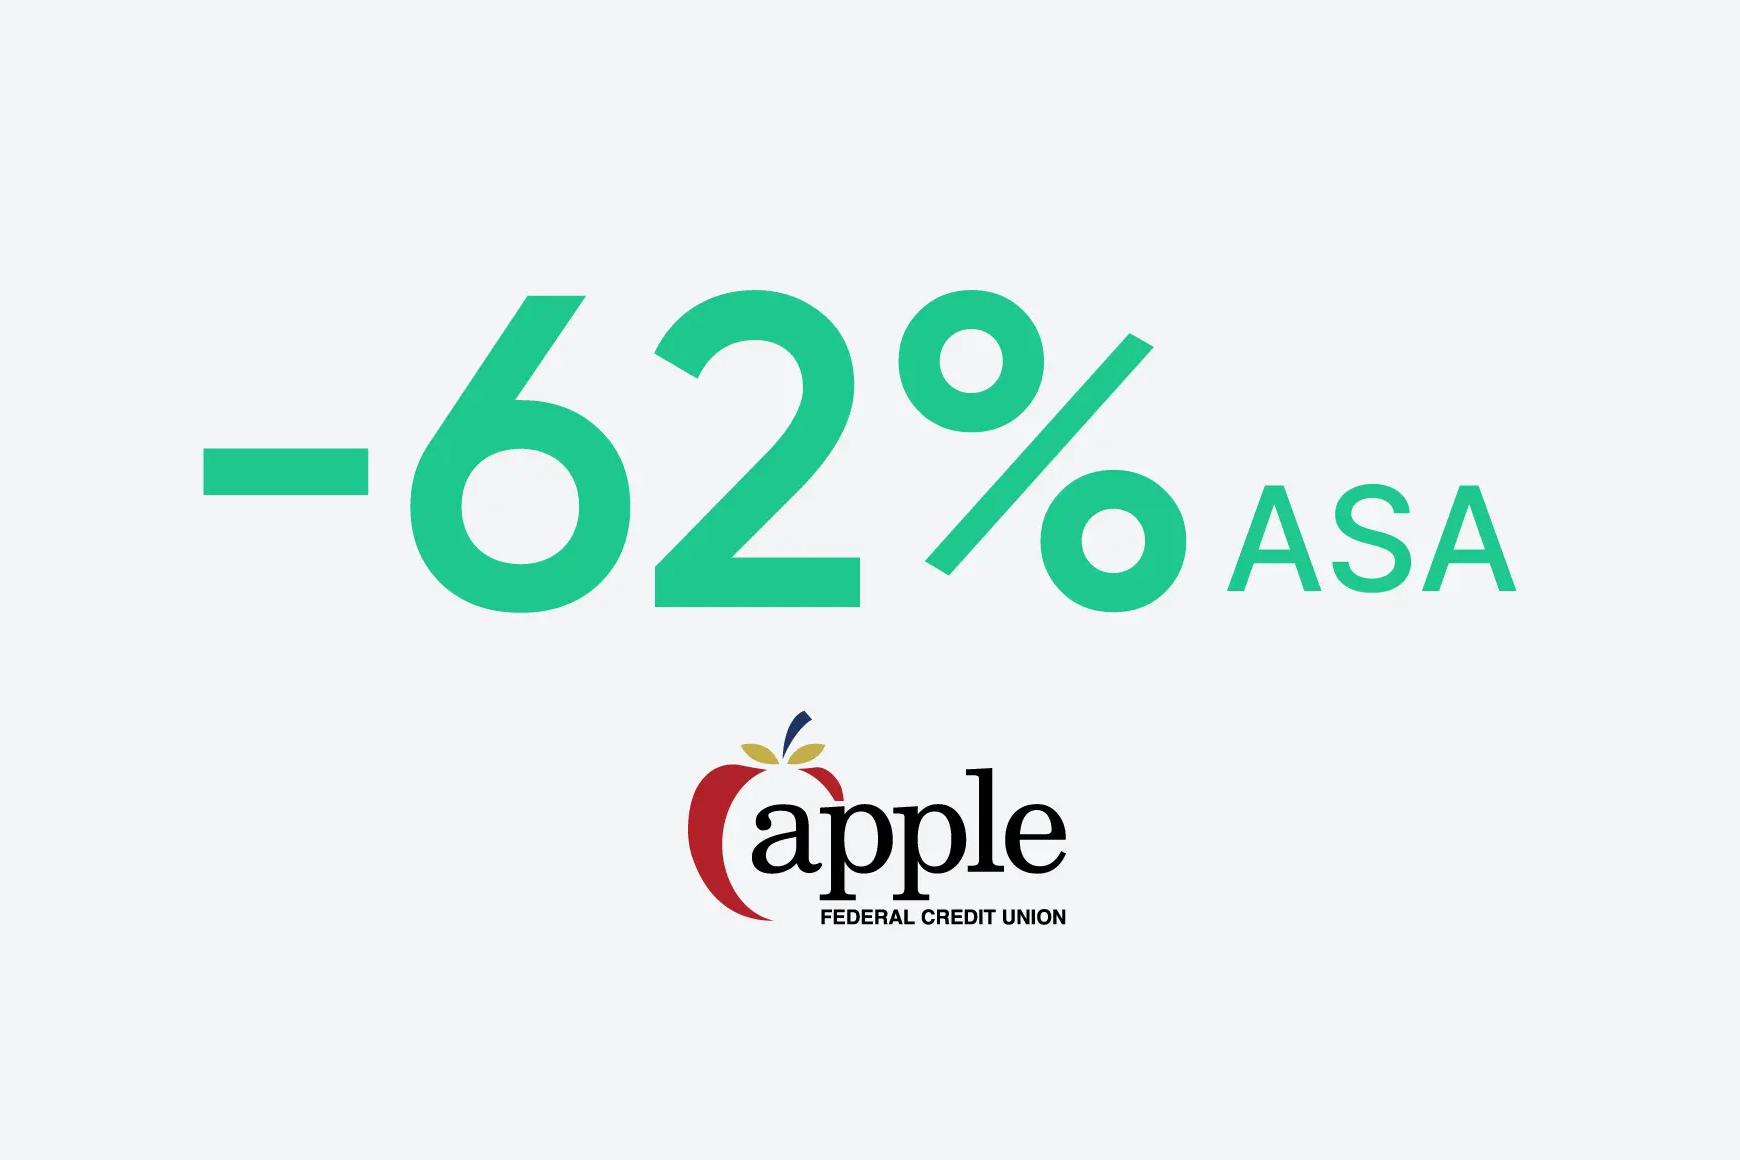 A Apple Federal Credit Union reduziu a ASA em 62%